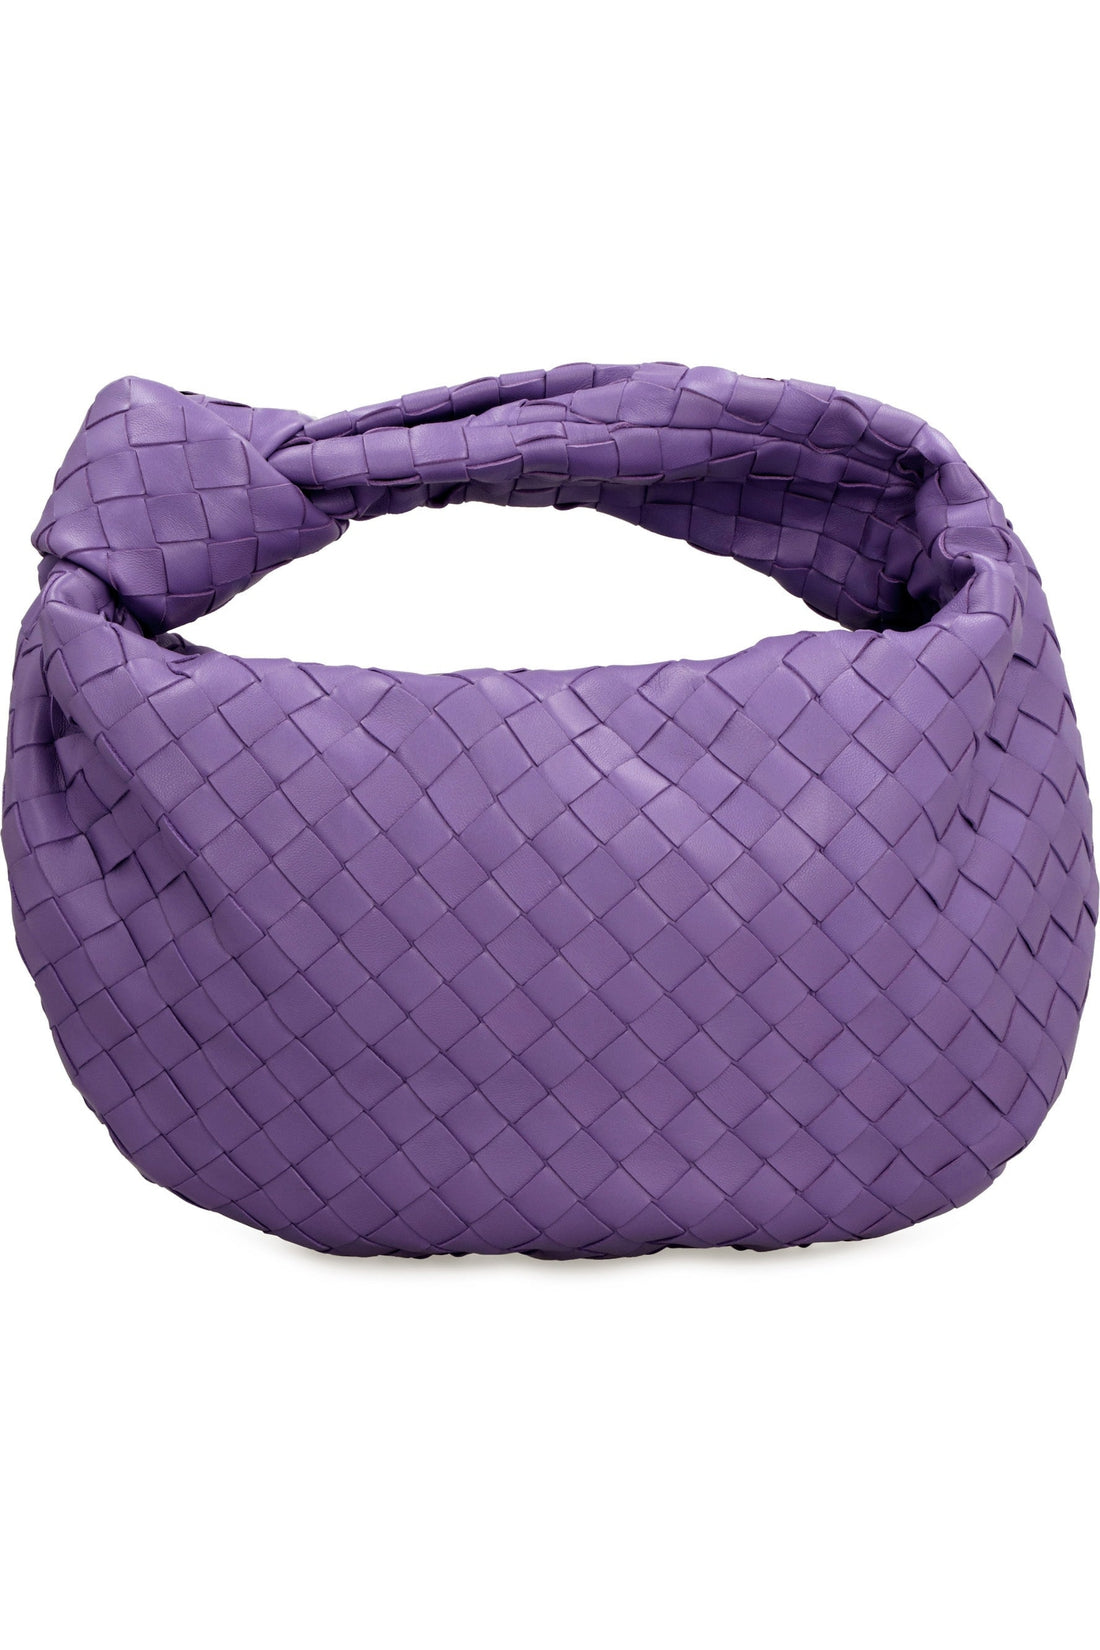 Bottega Veneta-OUTLET-SALE-Teen Jodie leather shoulder bag-ARCHIVIST